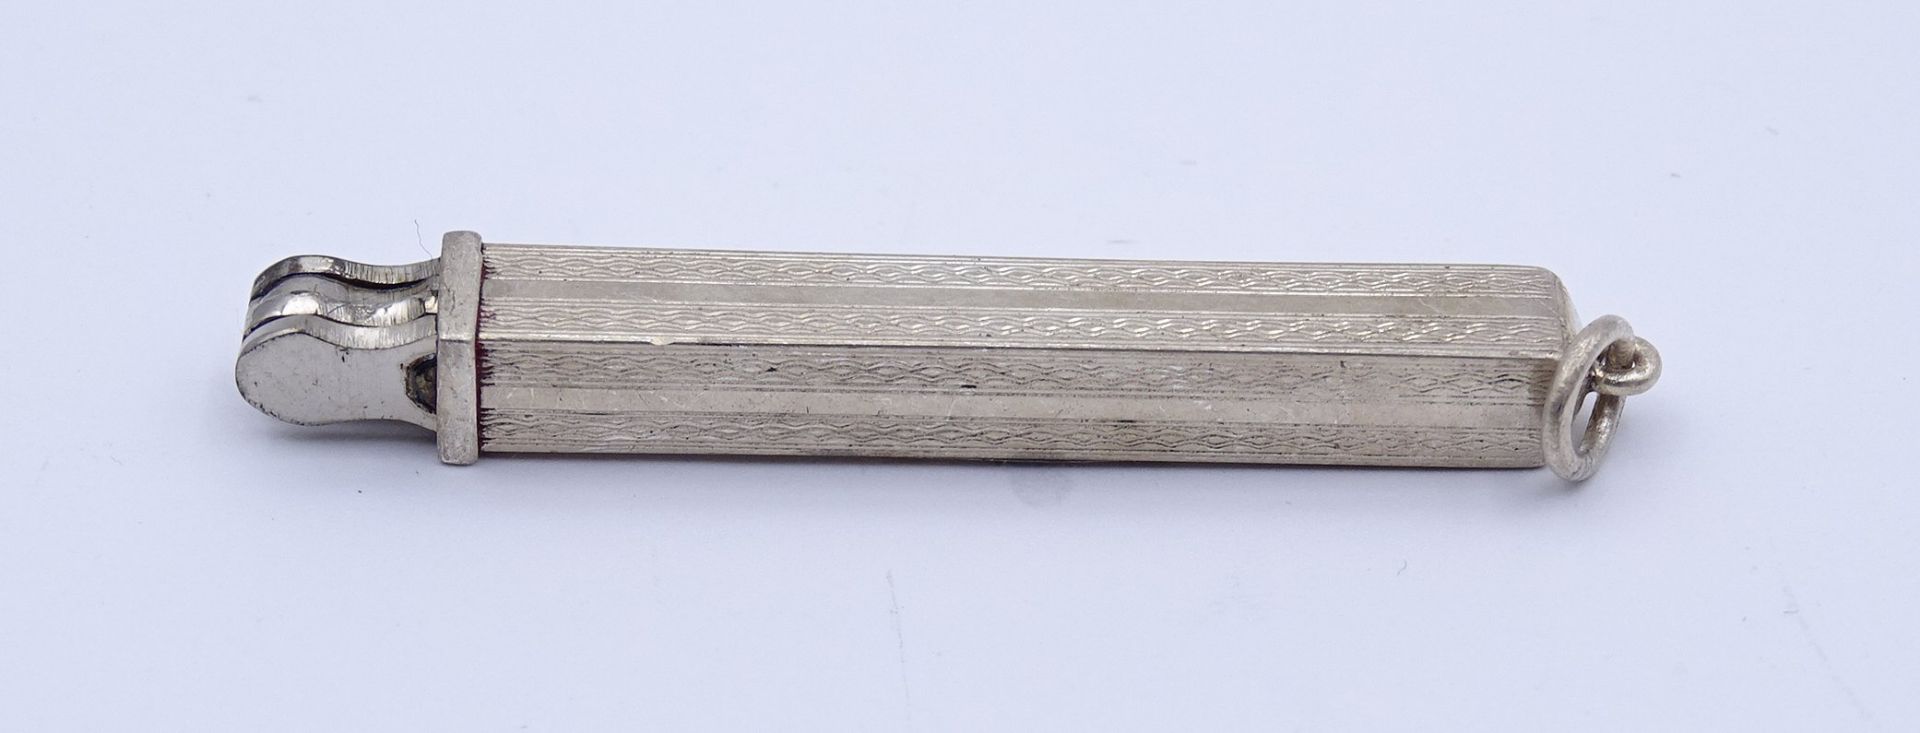 kl. Reise Manikürset,Silber 0.835 Hülse, L. 4,6cm, Alters- und Gebrauchsspuren